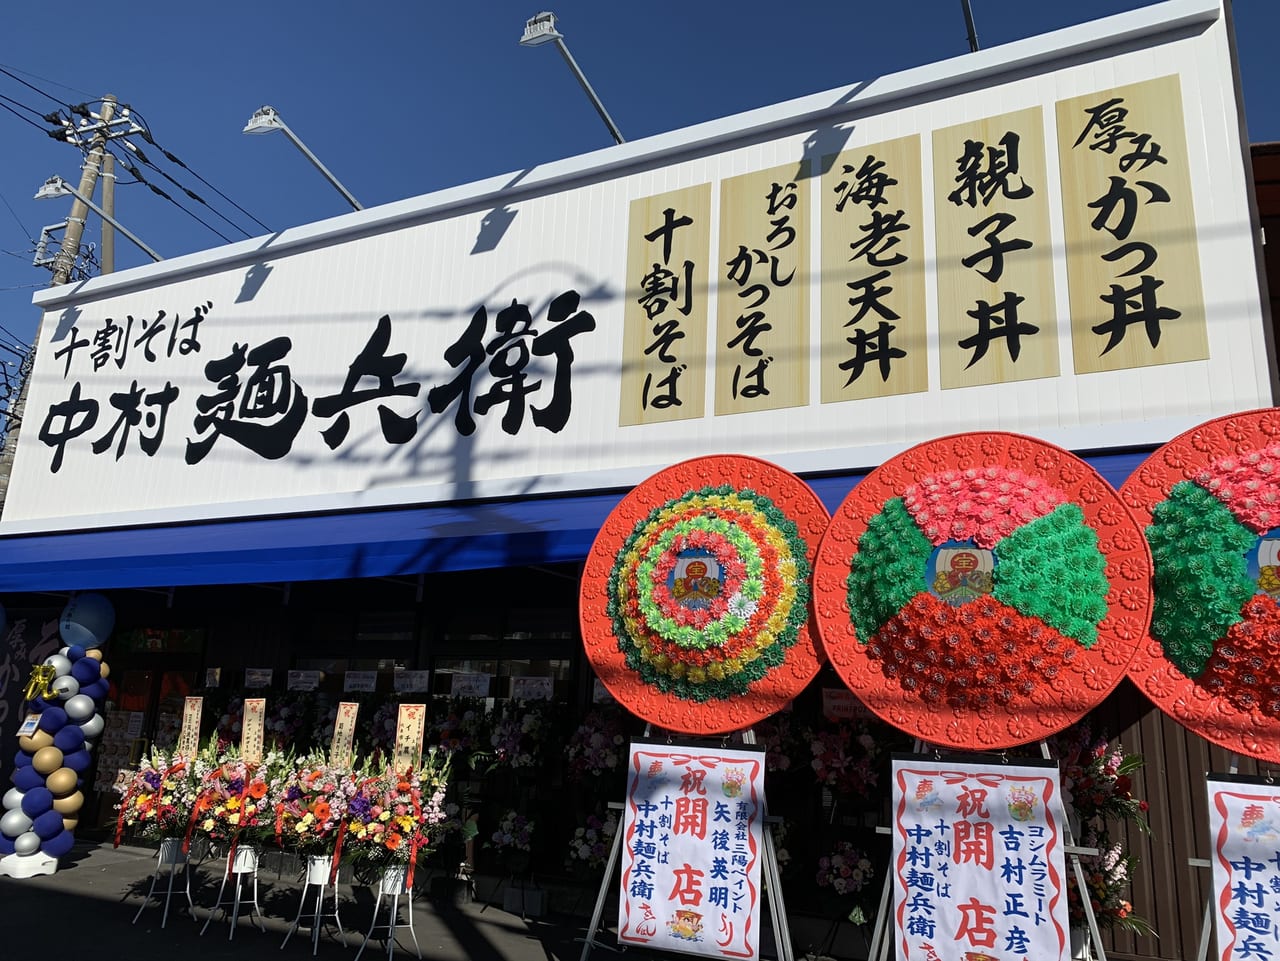 土浦市 渋谷でも人気 十割そば中村麺兵衛が年12月10日にオープンします 号外net 土浦市 かすみがうら市 石岡市